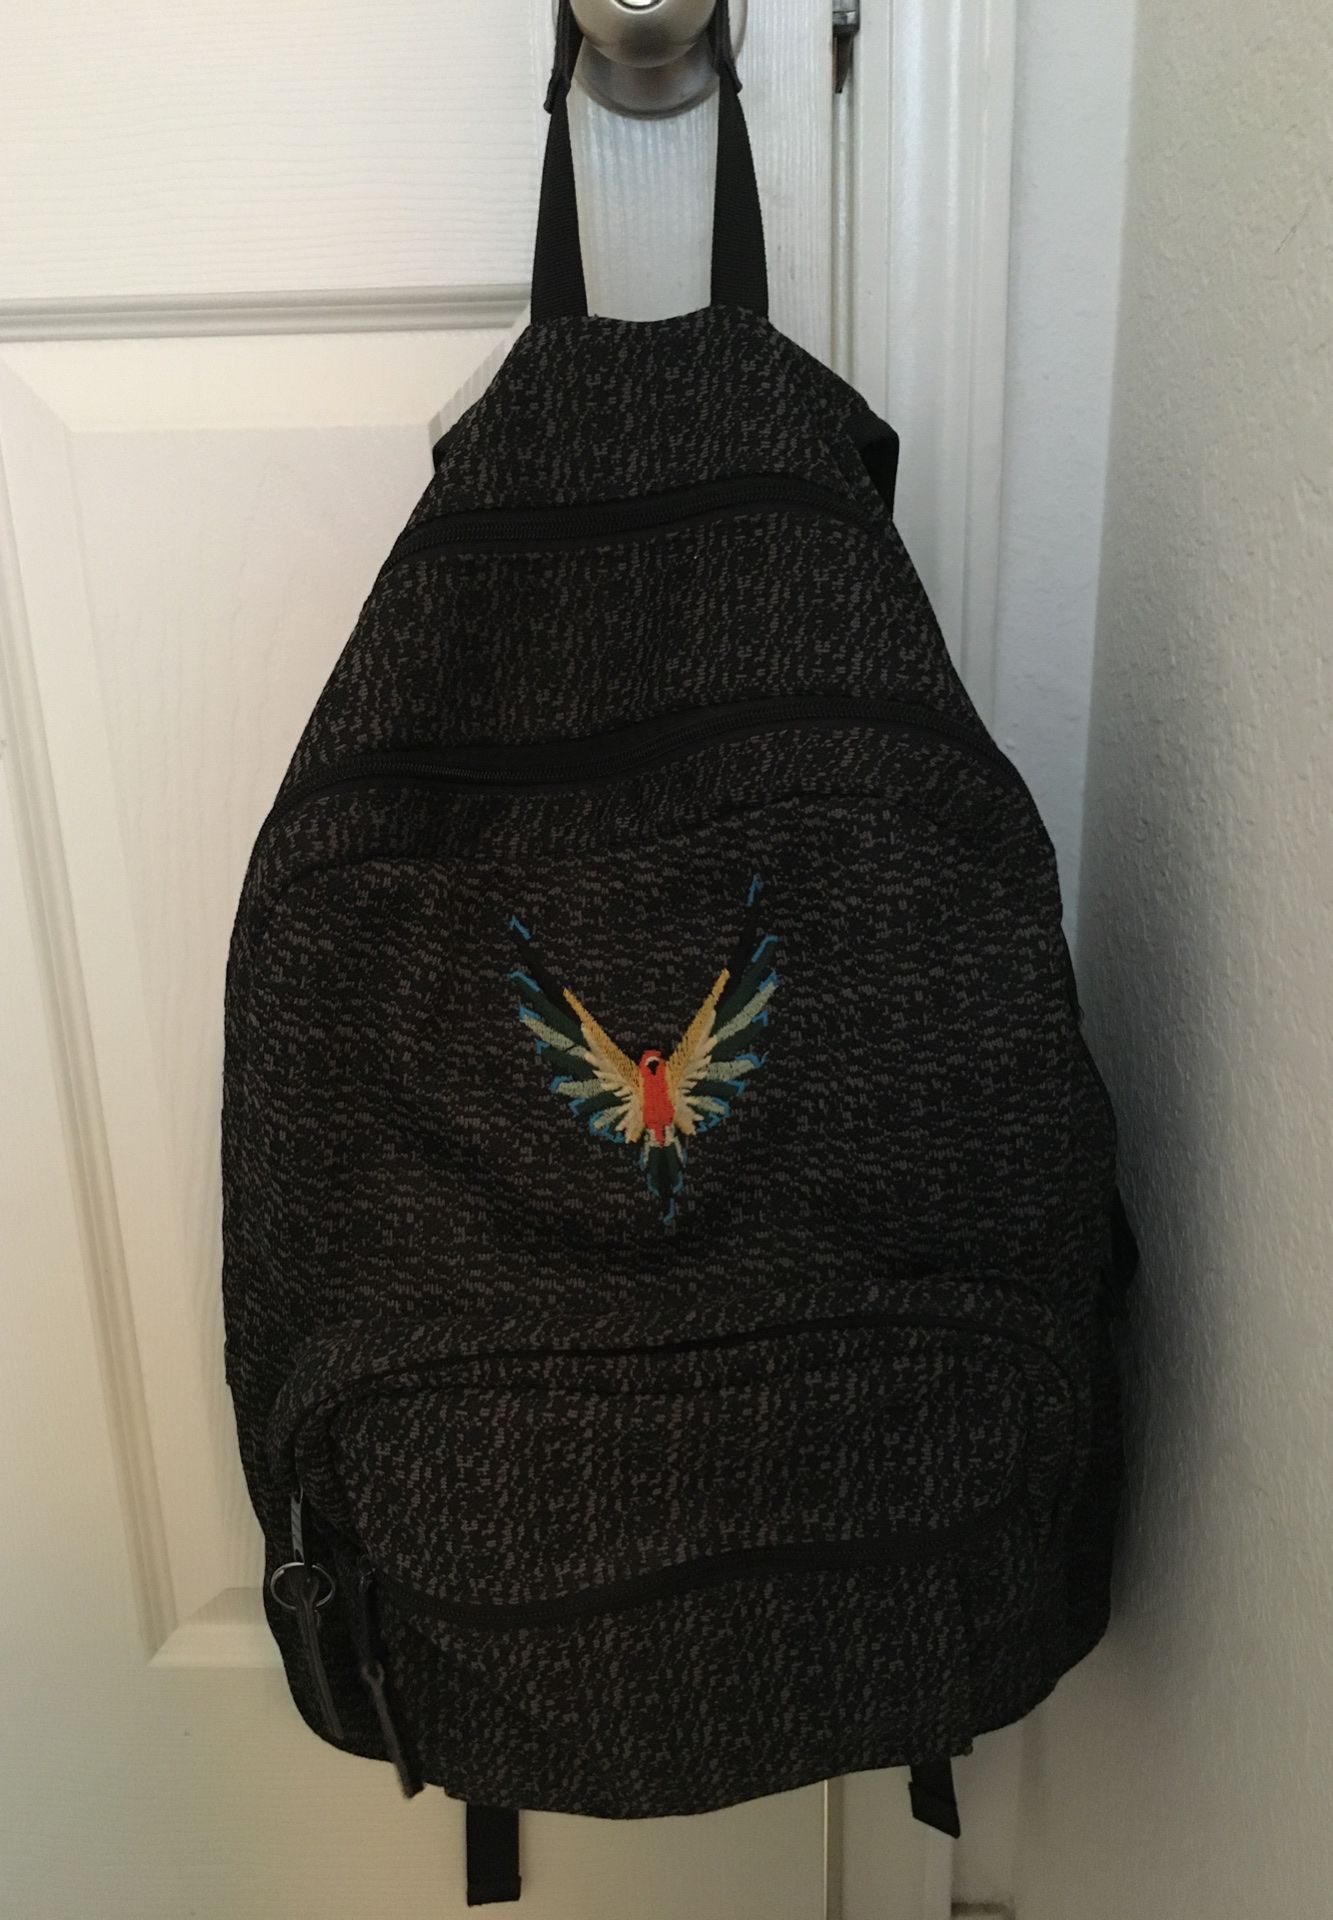 Maverick backpack (logan paul)